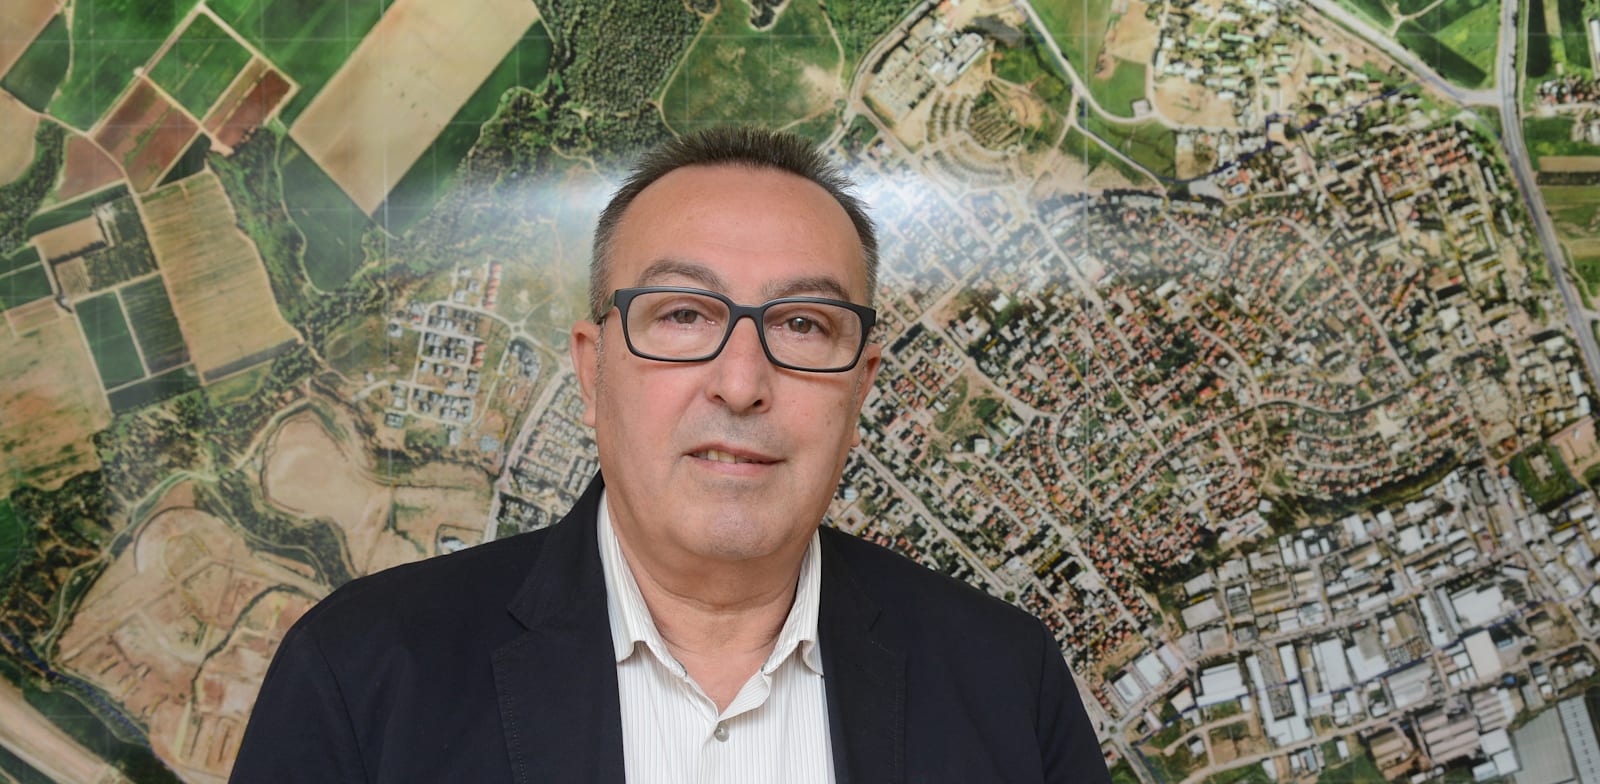 ראש עיריית נתיבות יחיאל זוהר / צילום: איל יצהר